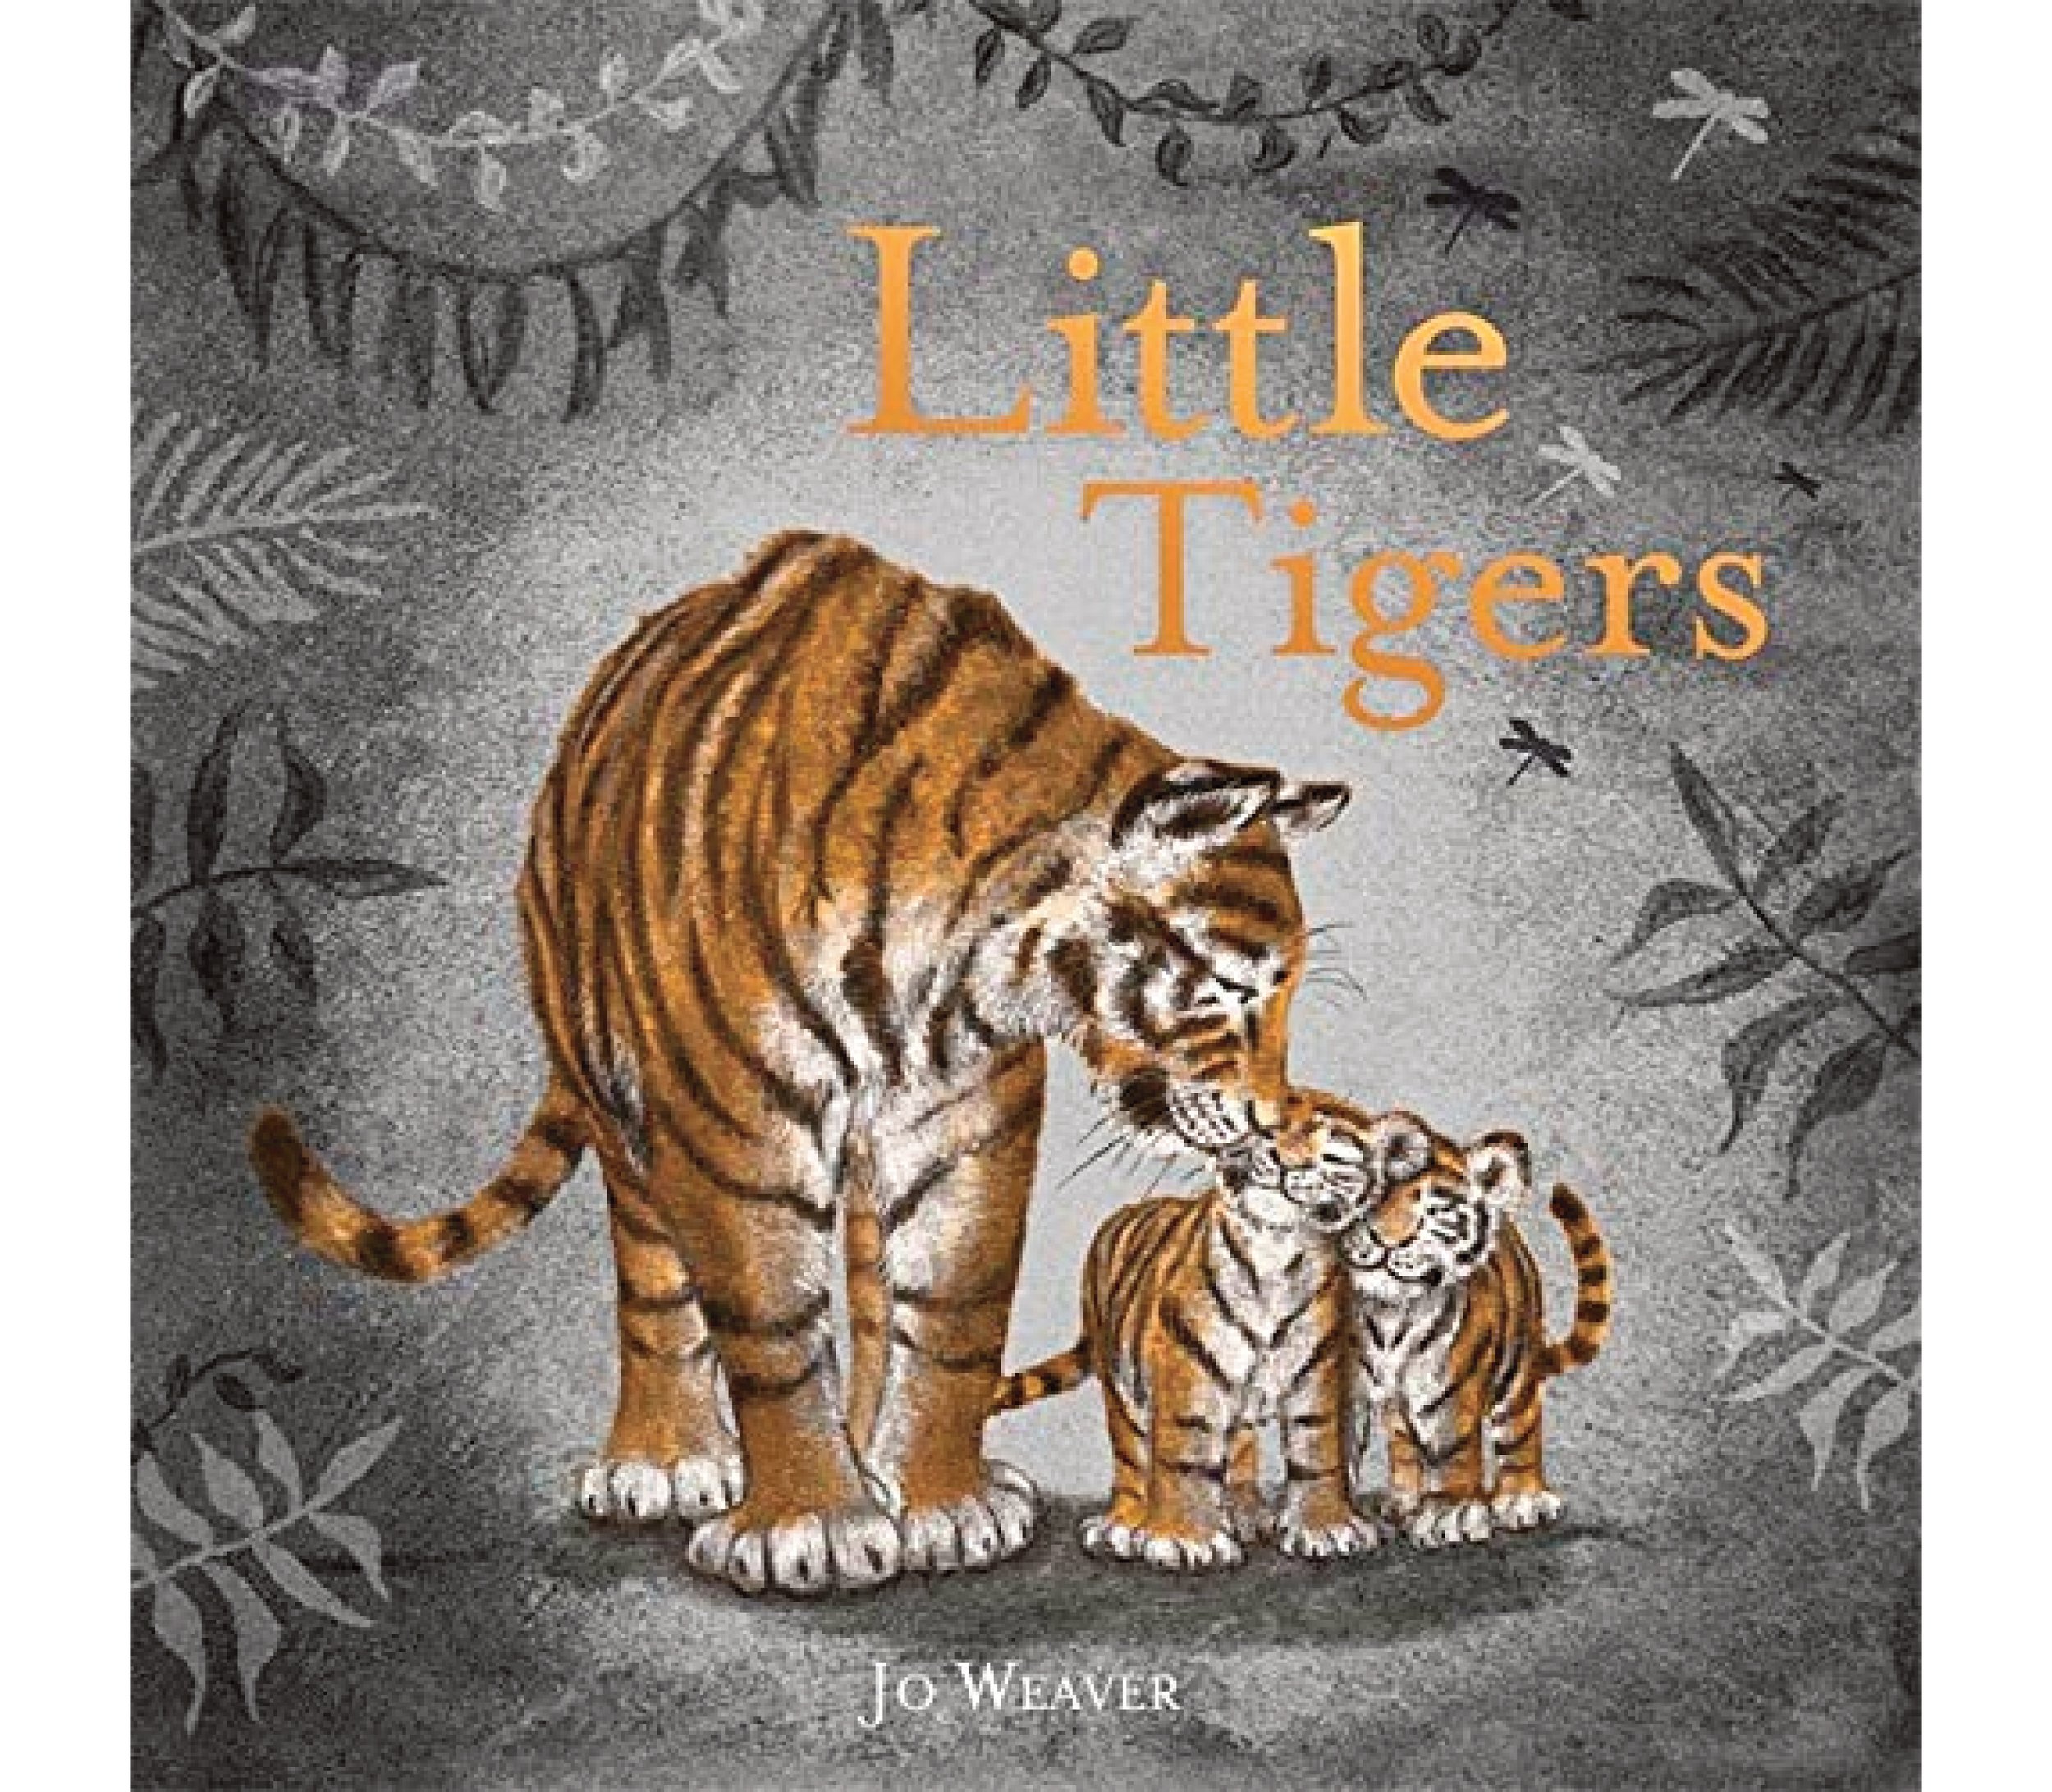 jo-weaver-little-tigers-cover.jpg